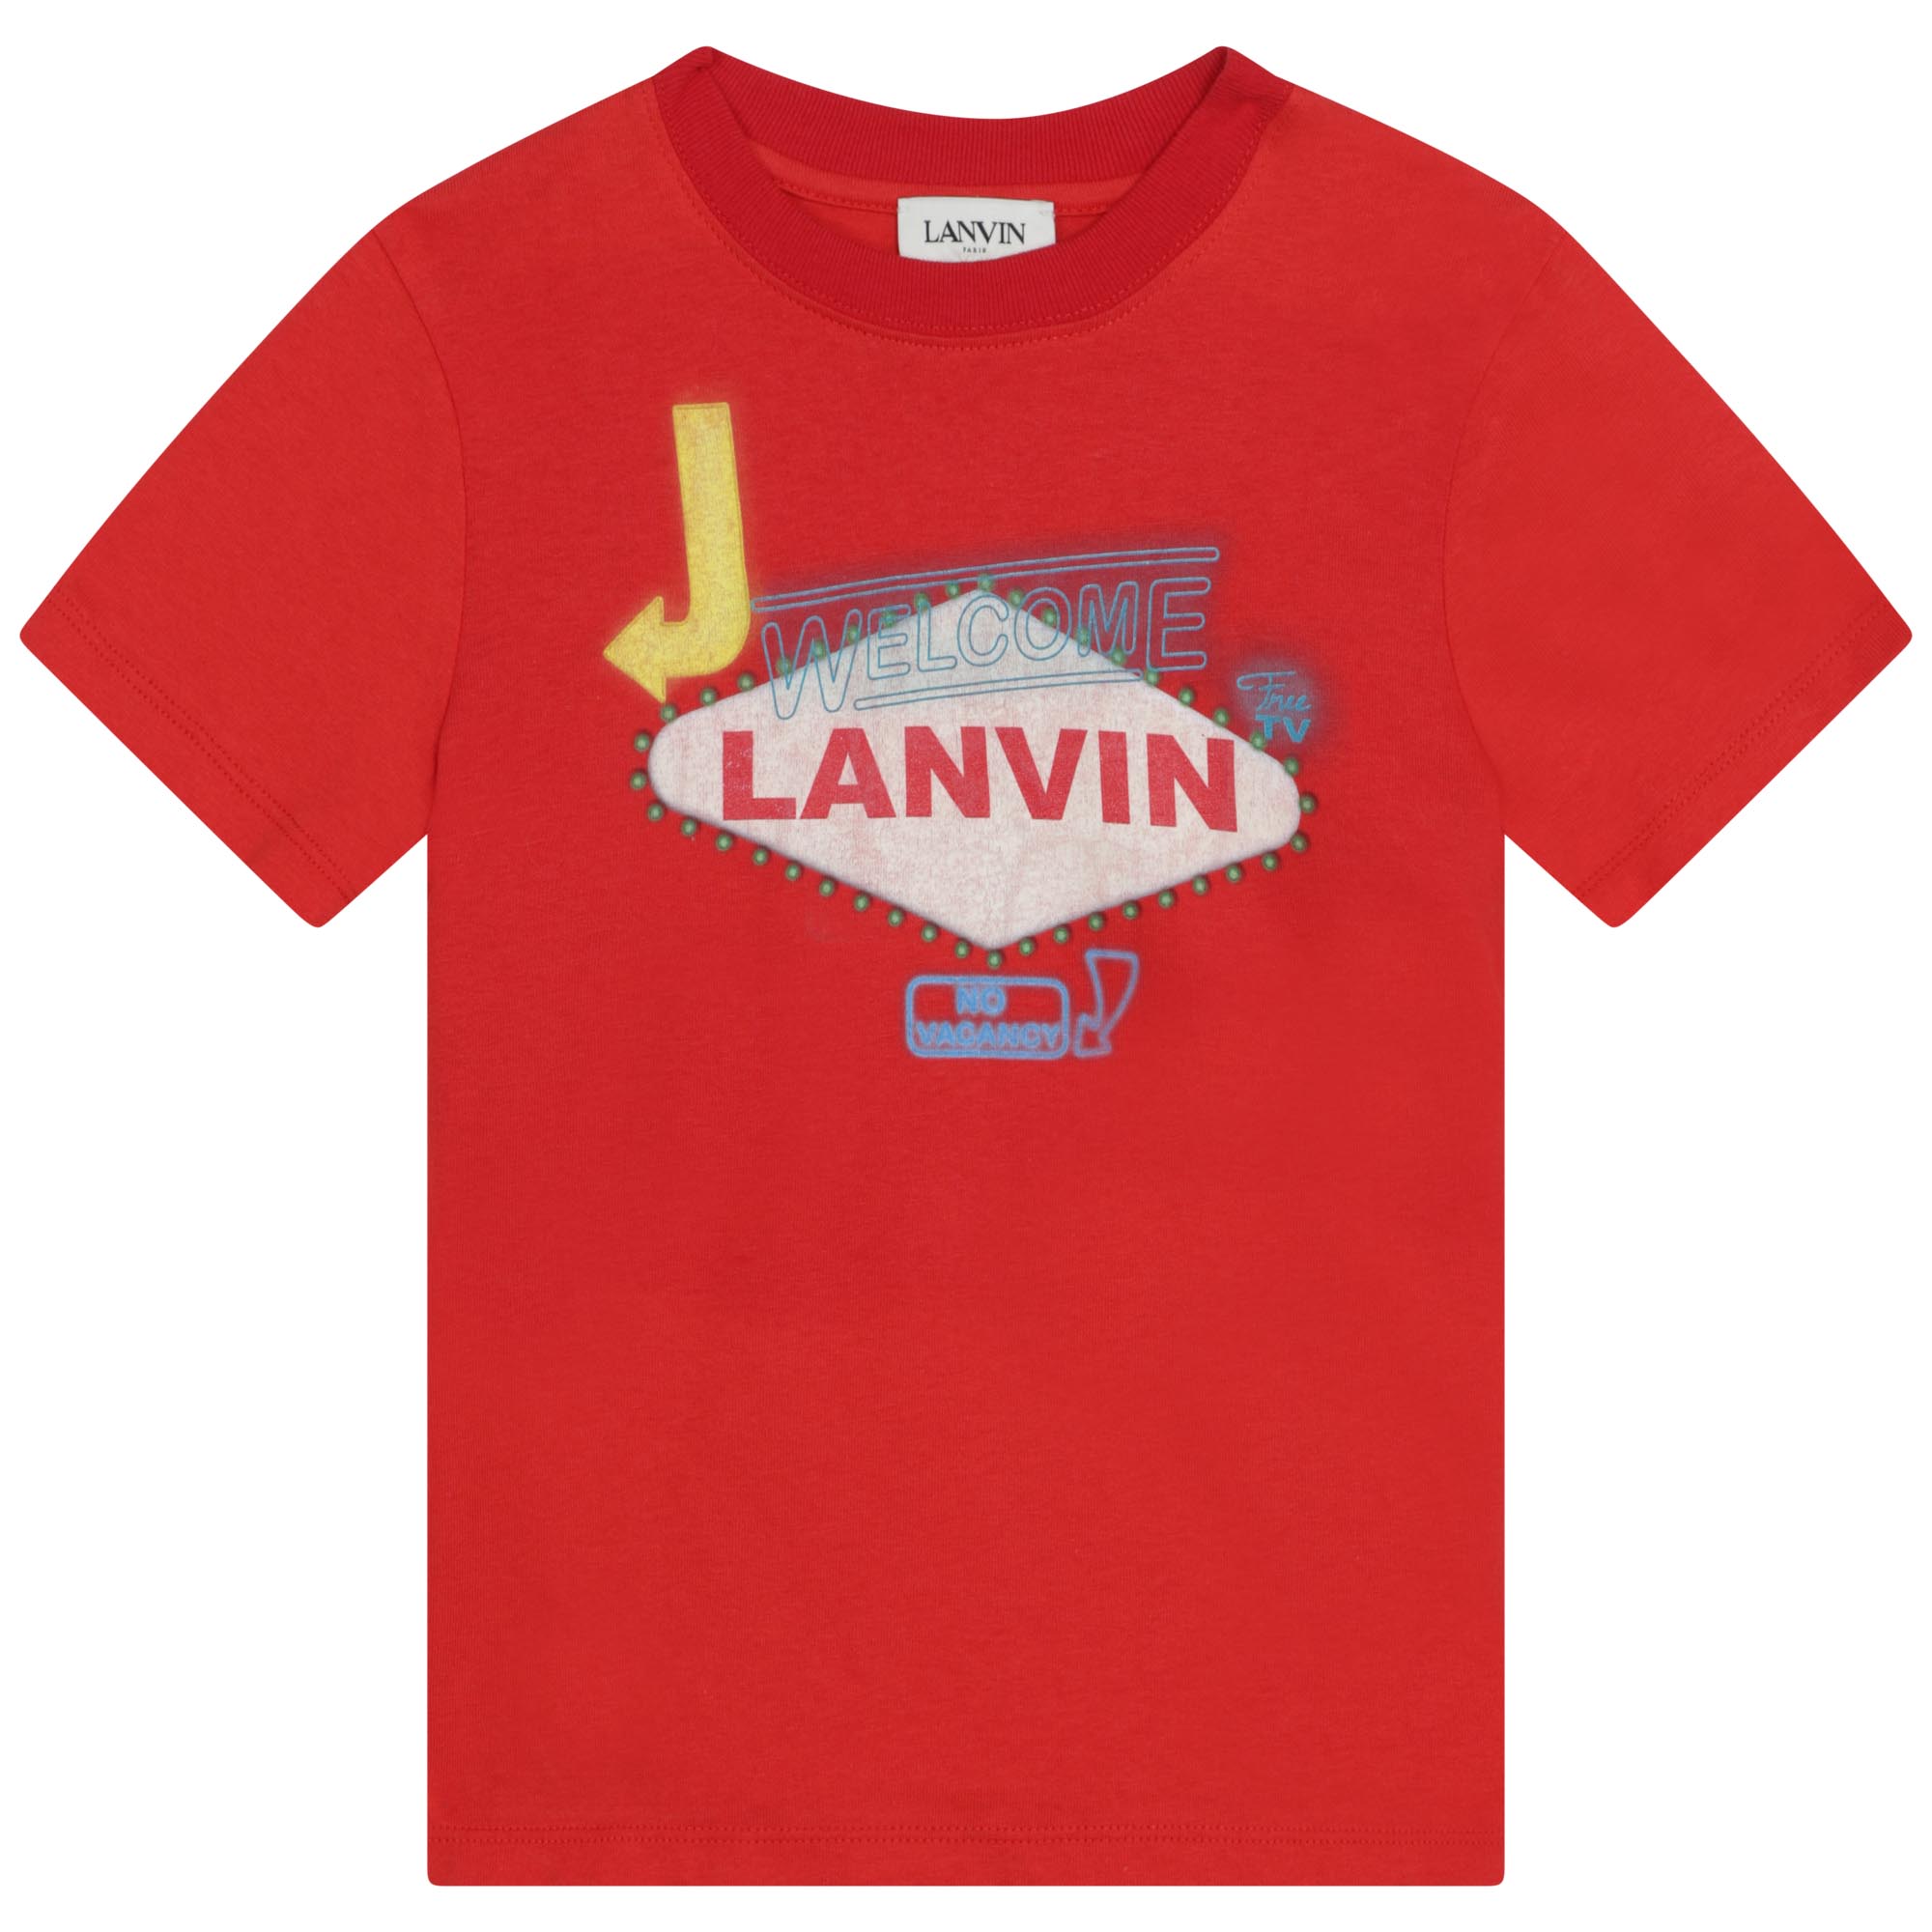 T-shirt imprimé en coton LANVIN pour GARCON